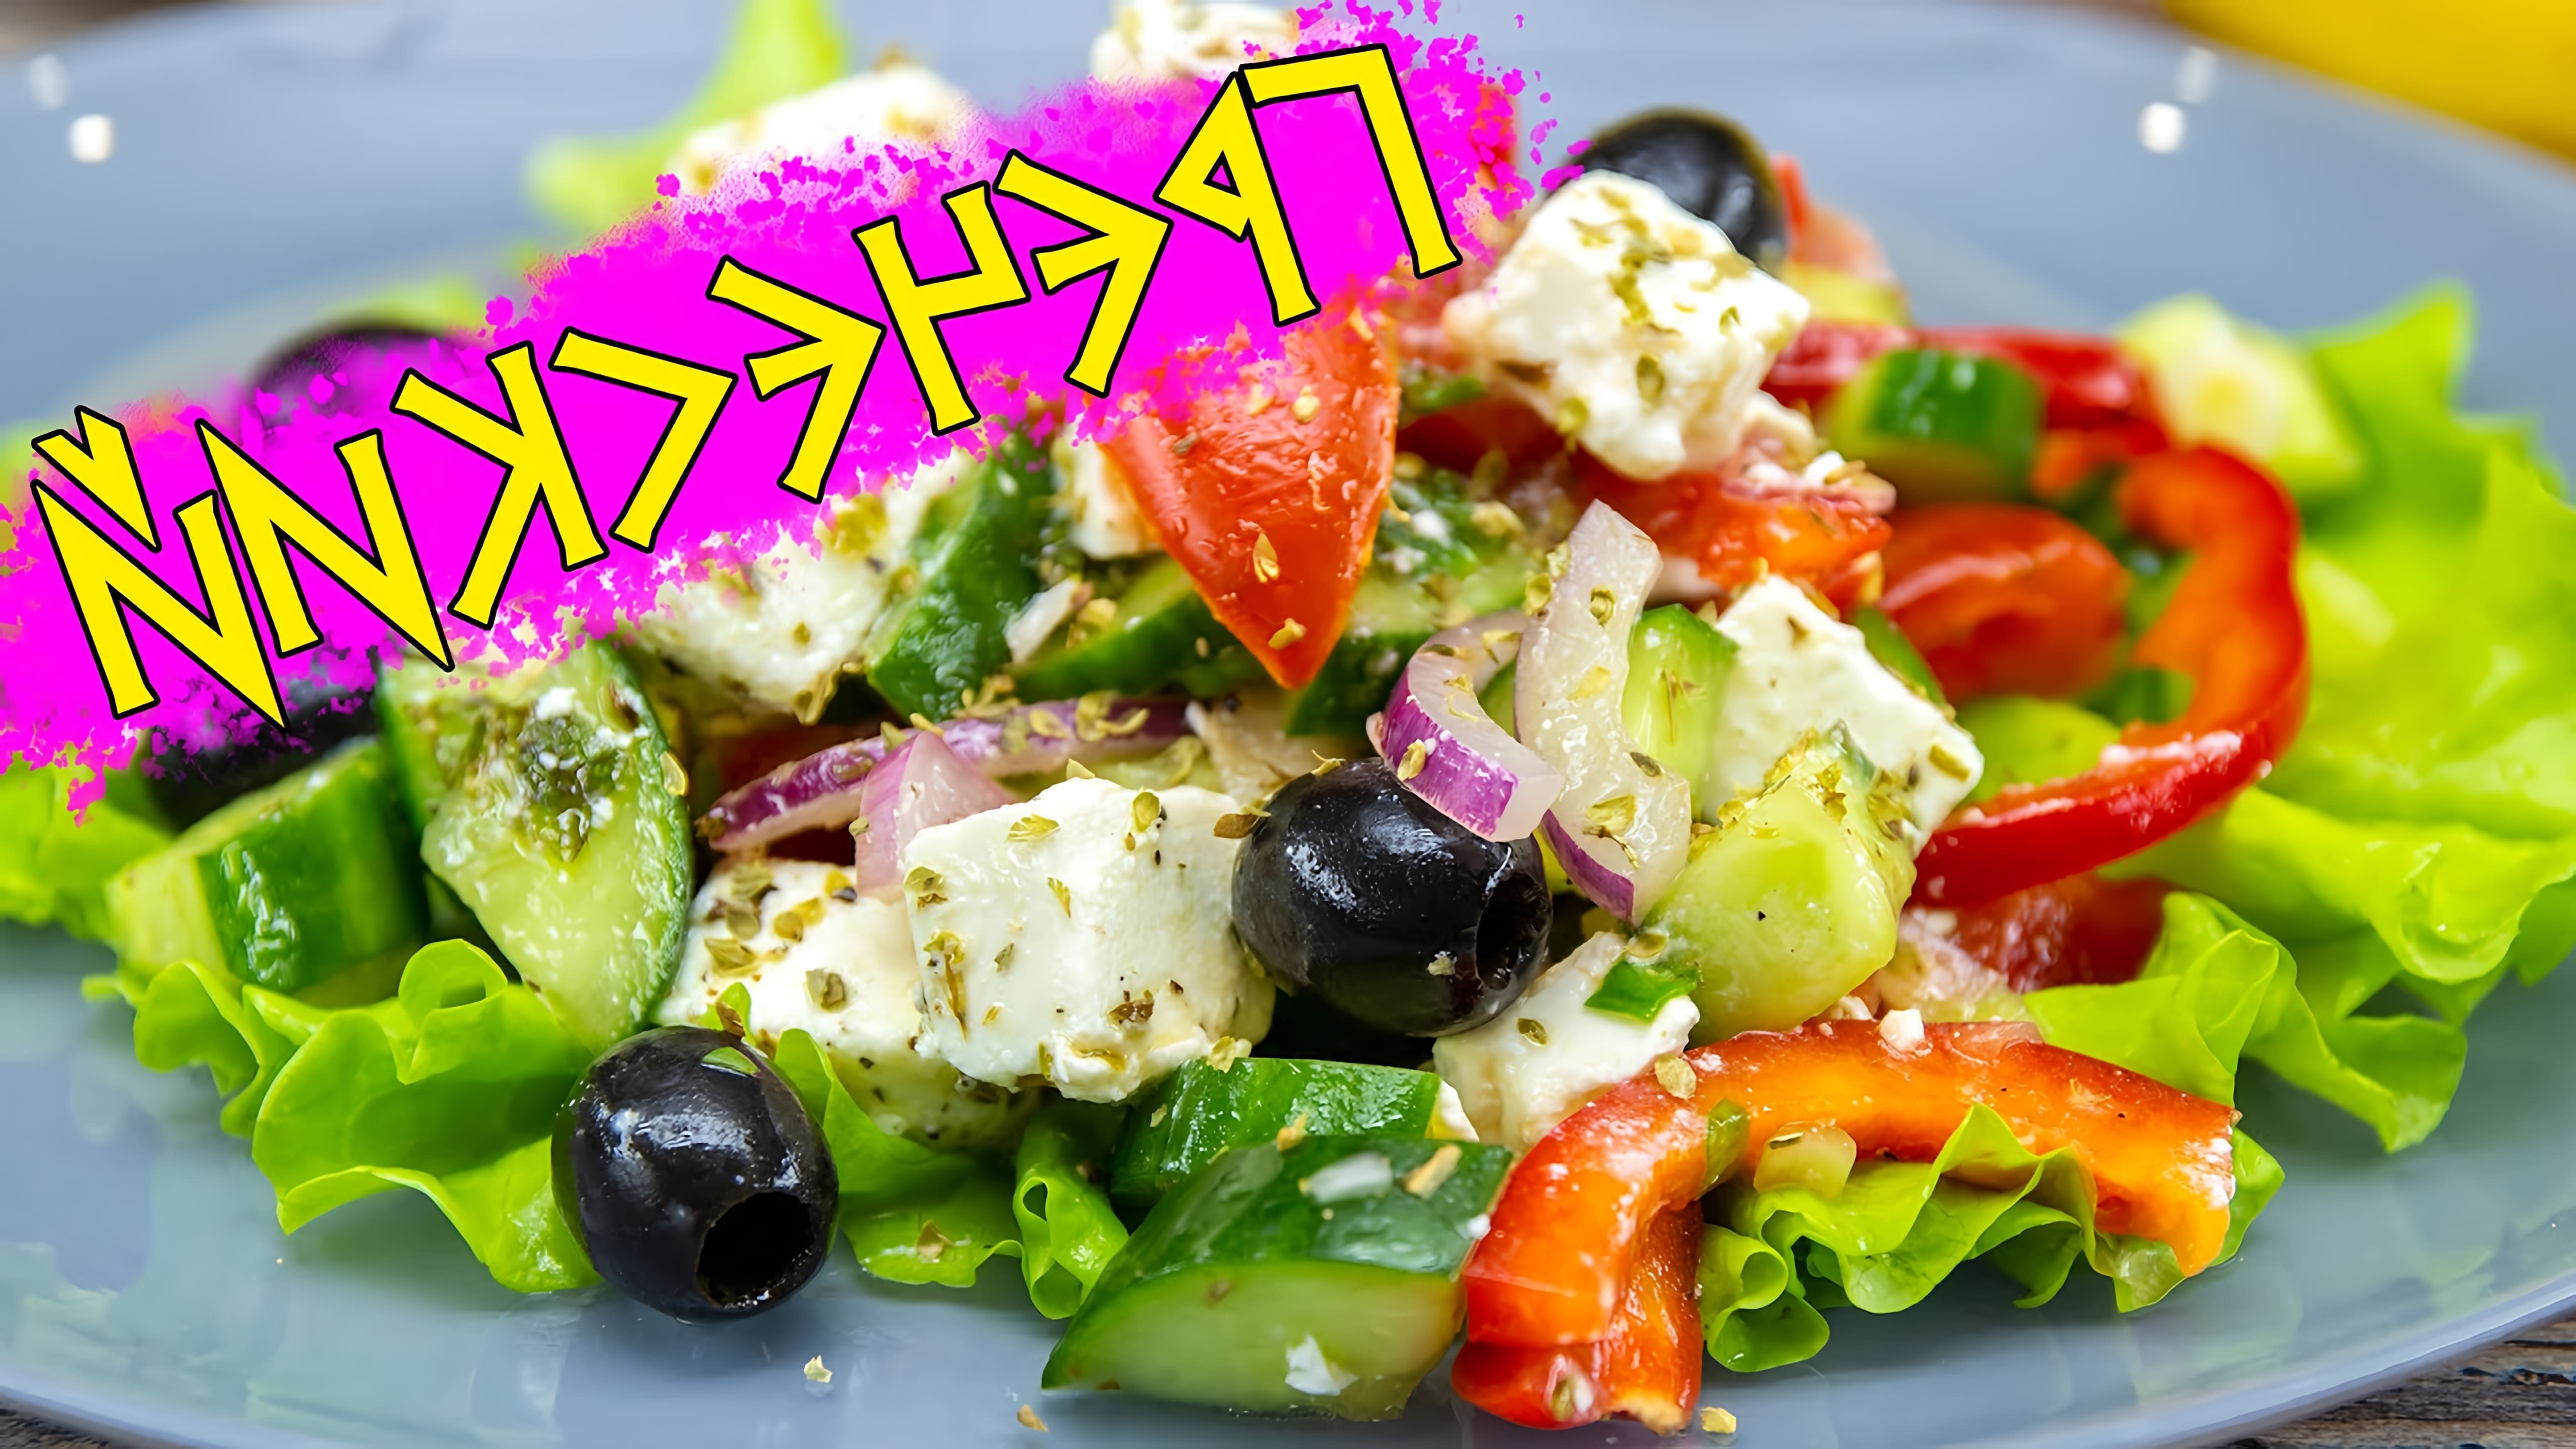 В этом видео демонстрируется процесс приготовления греческого салата